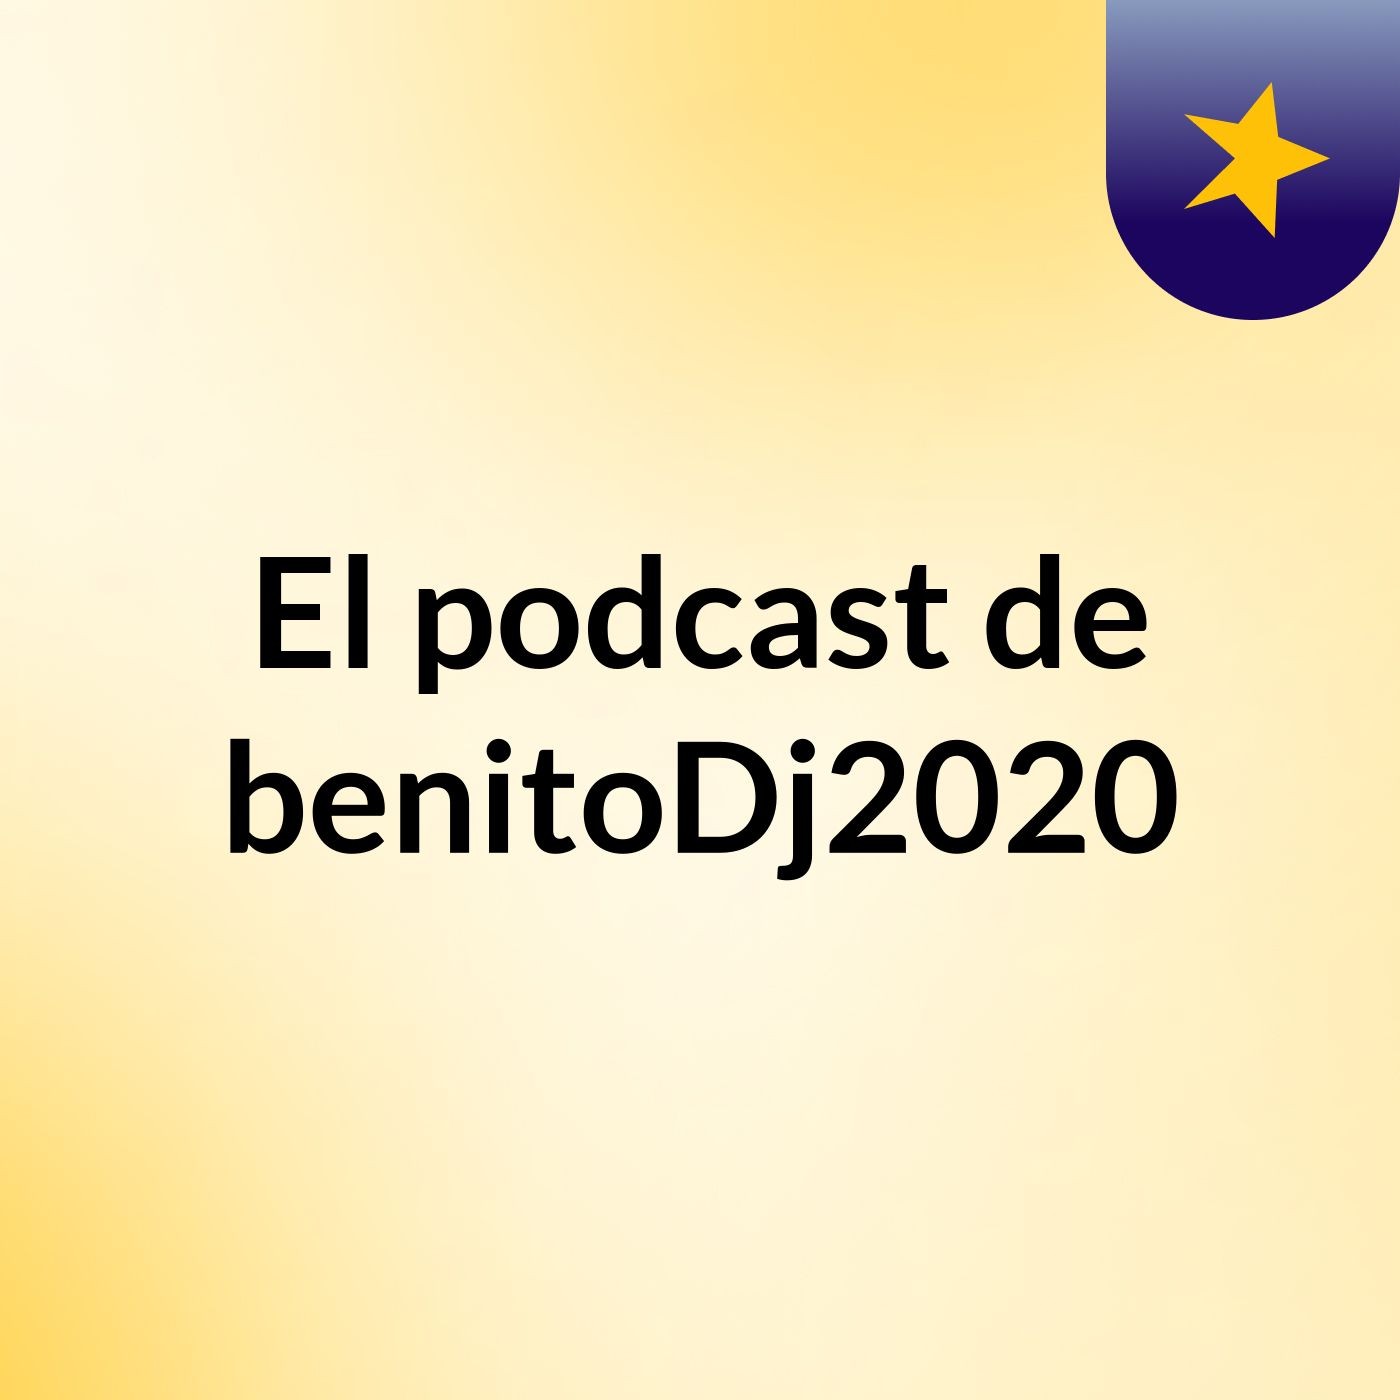 El podcast de benitoDj2020